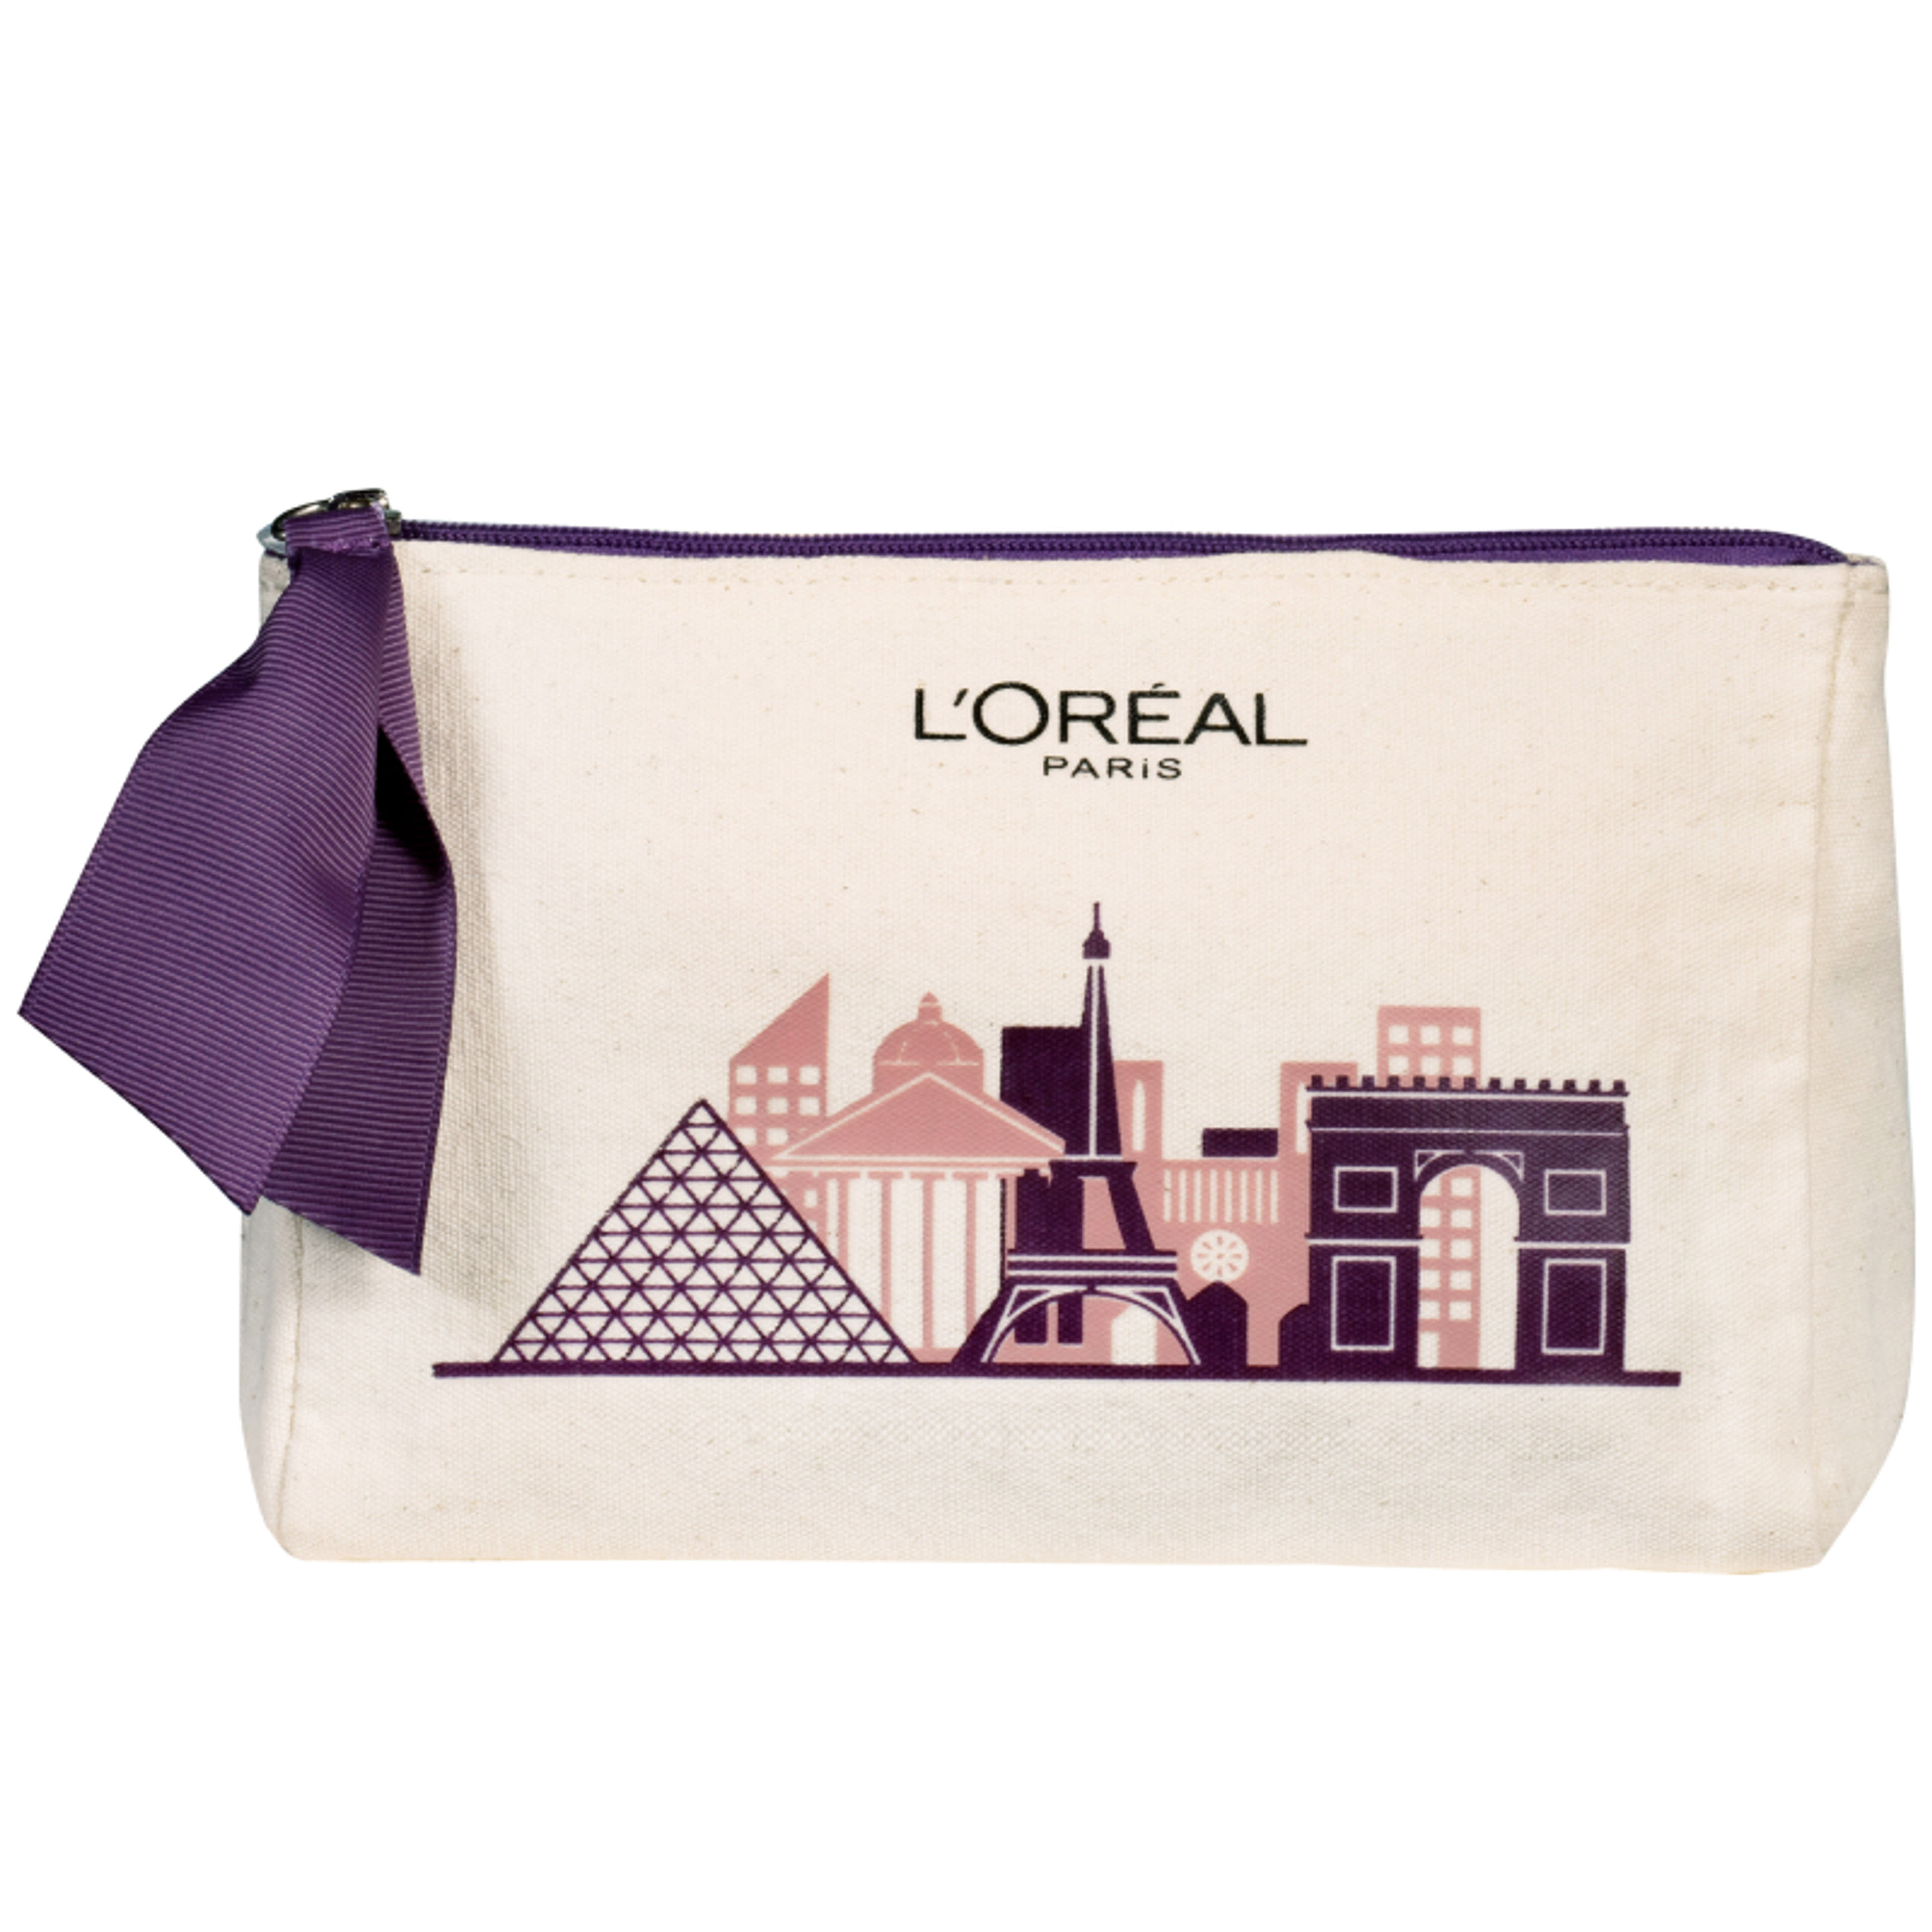 L'Oréal Paris kozmetikai táska - 1 db